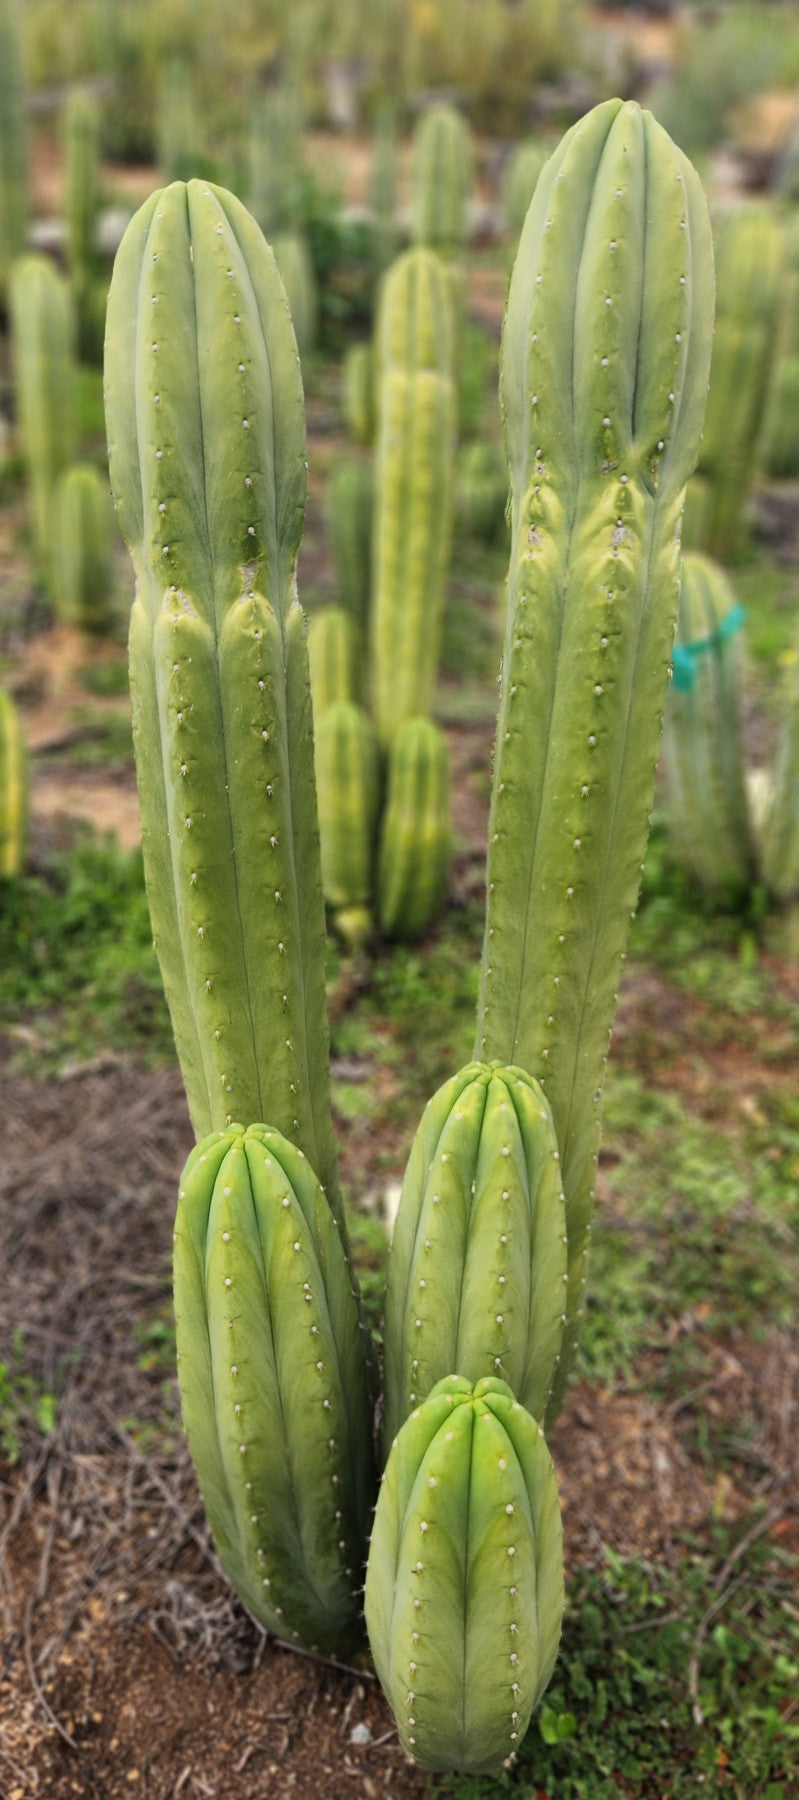 #EC358 EXACT Trichocereus Pachanoi "Pierre" Cactus Cutting 8"-Cactus - Large - Exact-The Succulent Source